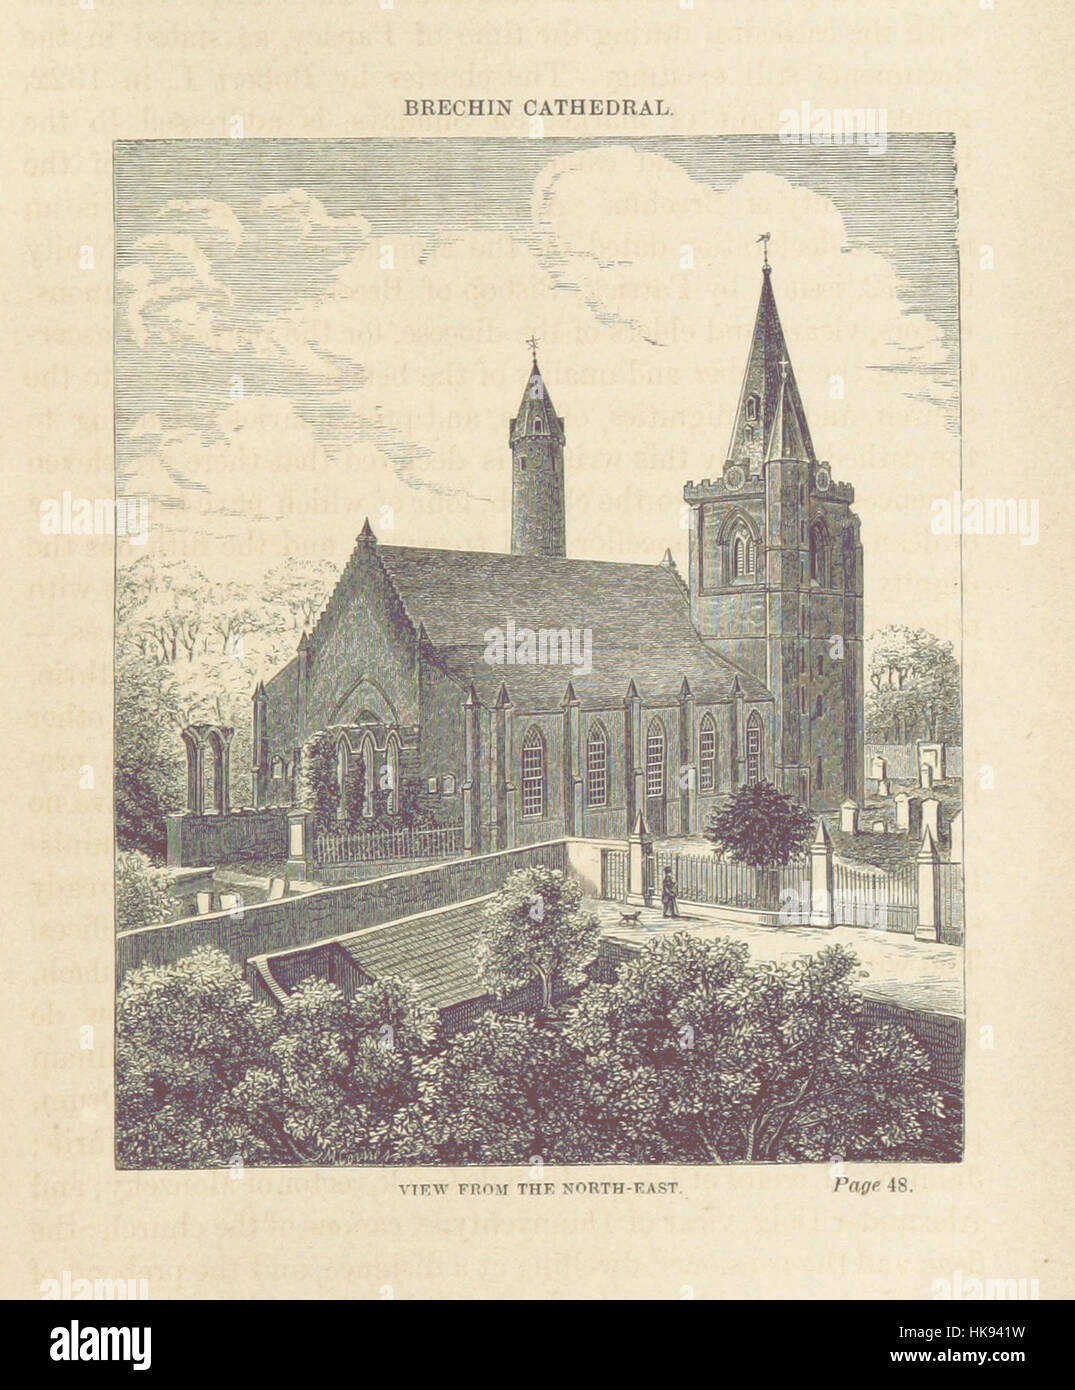 Image prise à partir de la page 67 de "l'histoire de Brechin pour 1864 ... Deuxième édition' image prise à partir de la page 67 de "l'Histor Banque D'Images